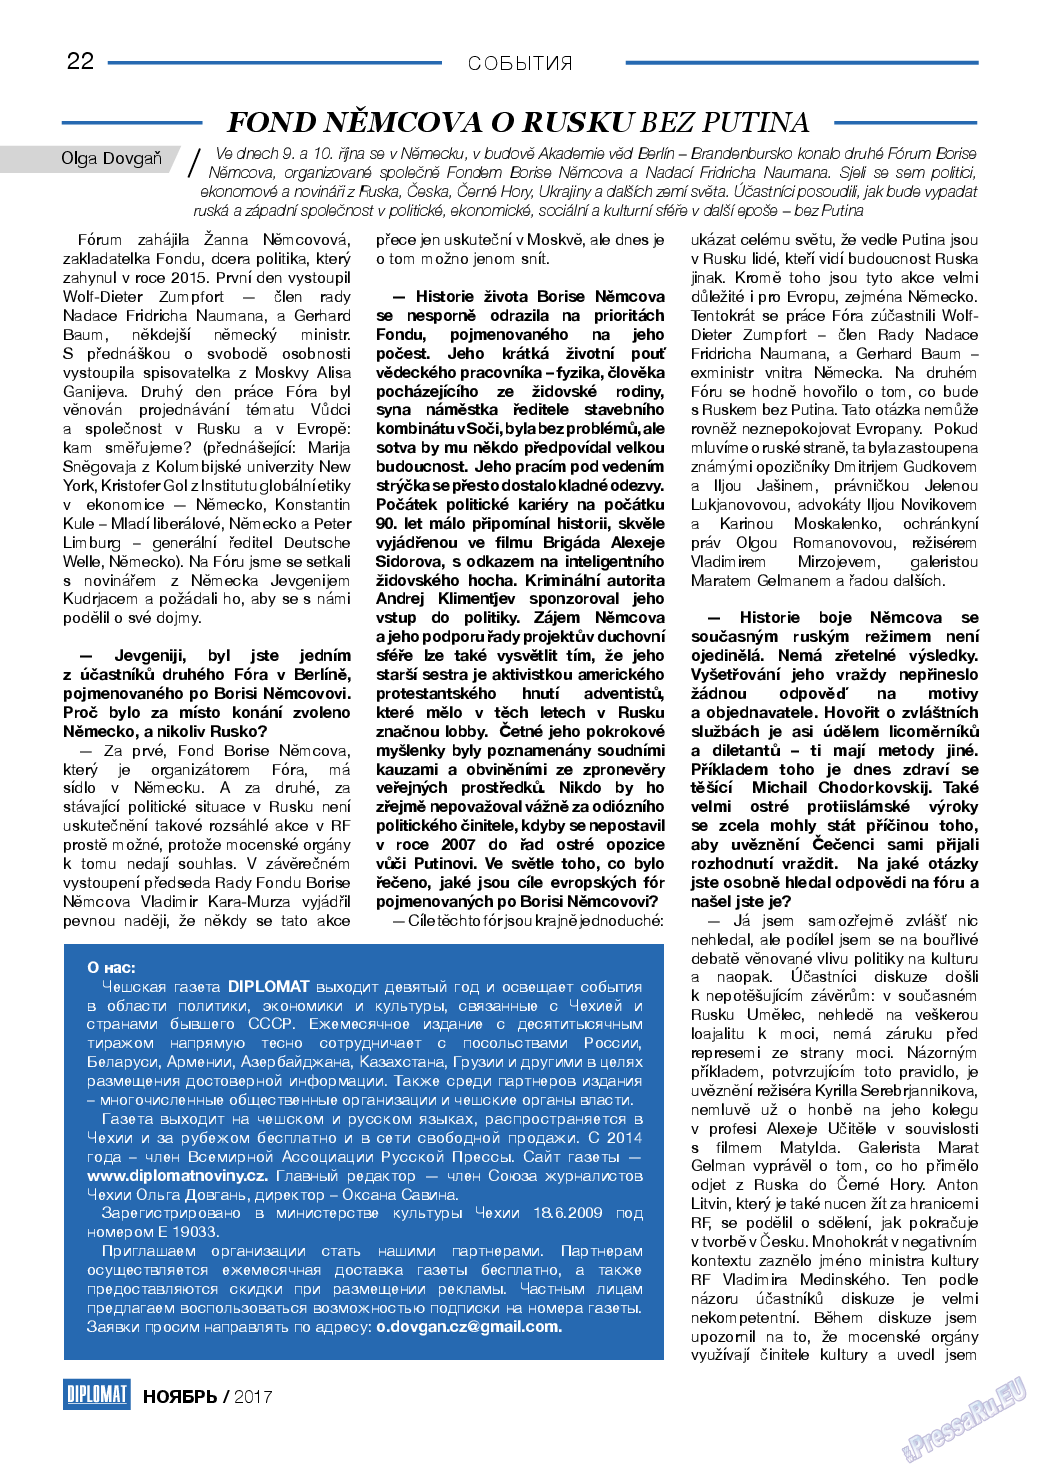 Diplomat, газета. 2017 №98 стр.22